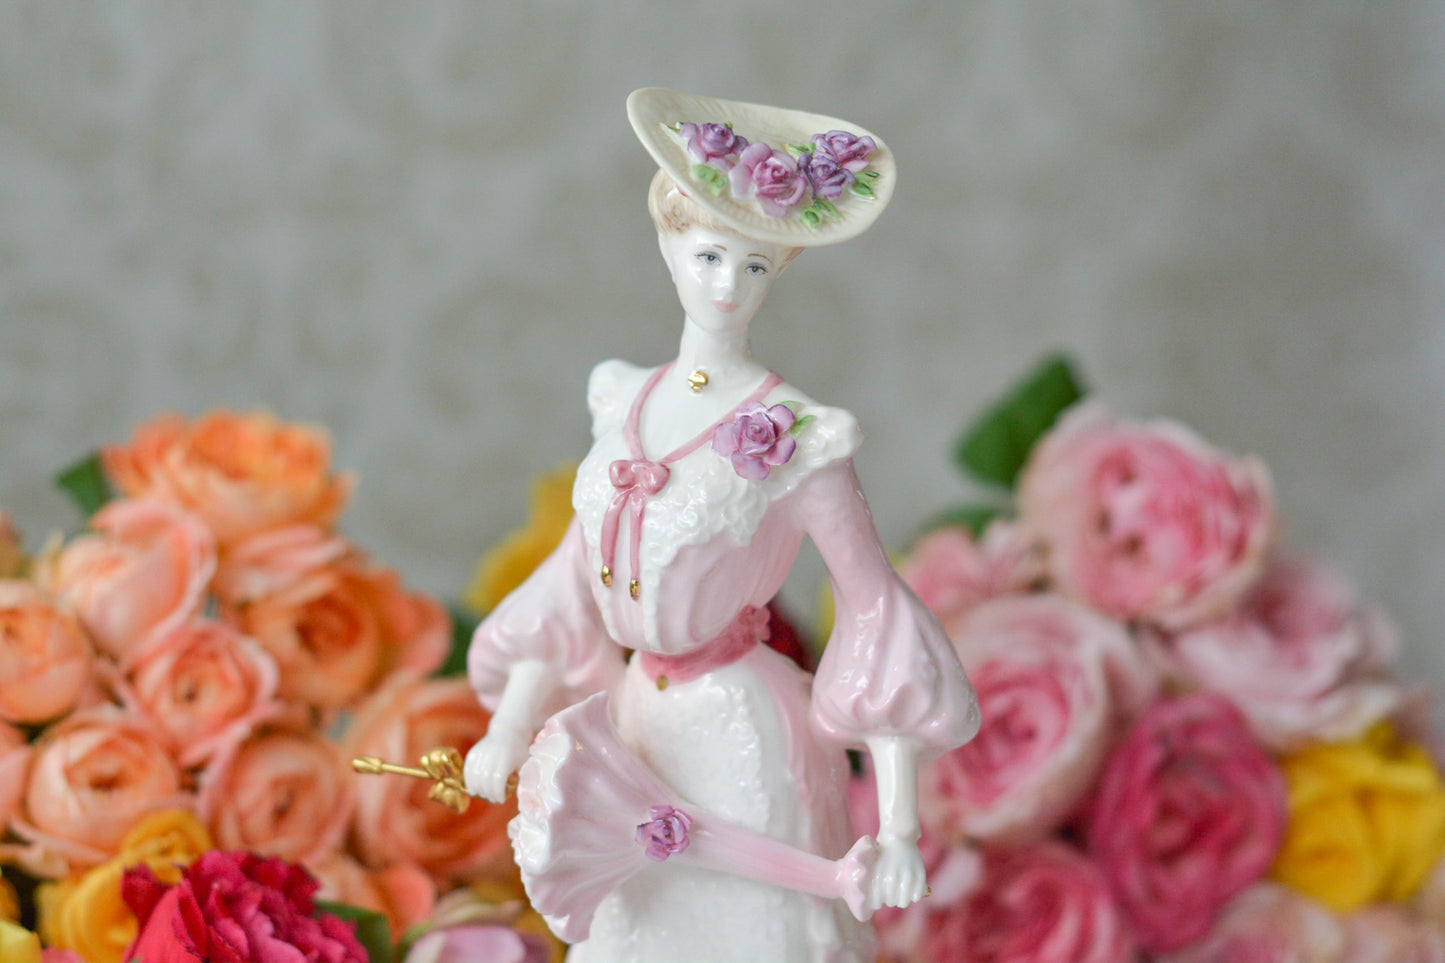 コールポートの美しいフィギュリン。フィギュリンは陶器で作られた人形です。ハンドペイントで絵付され、一つ一つ表情が異なります。